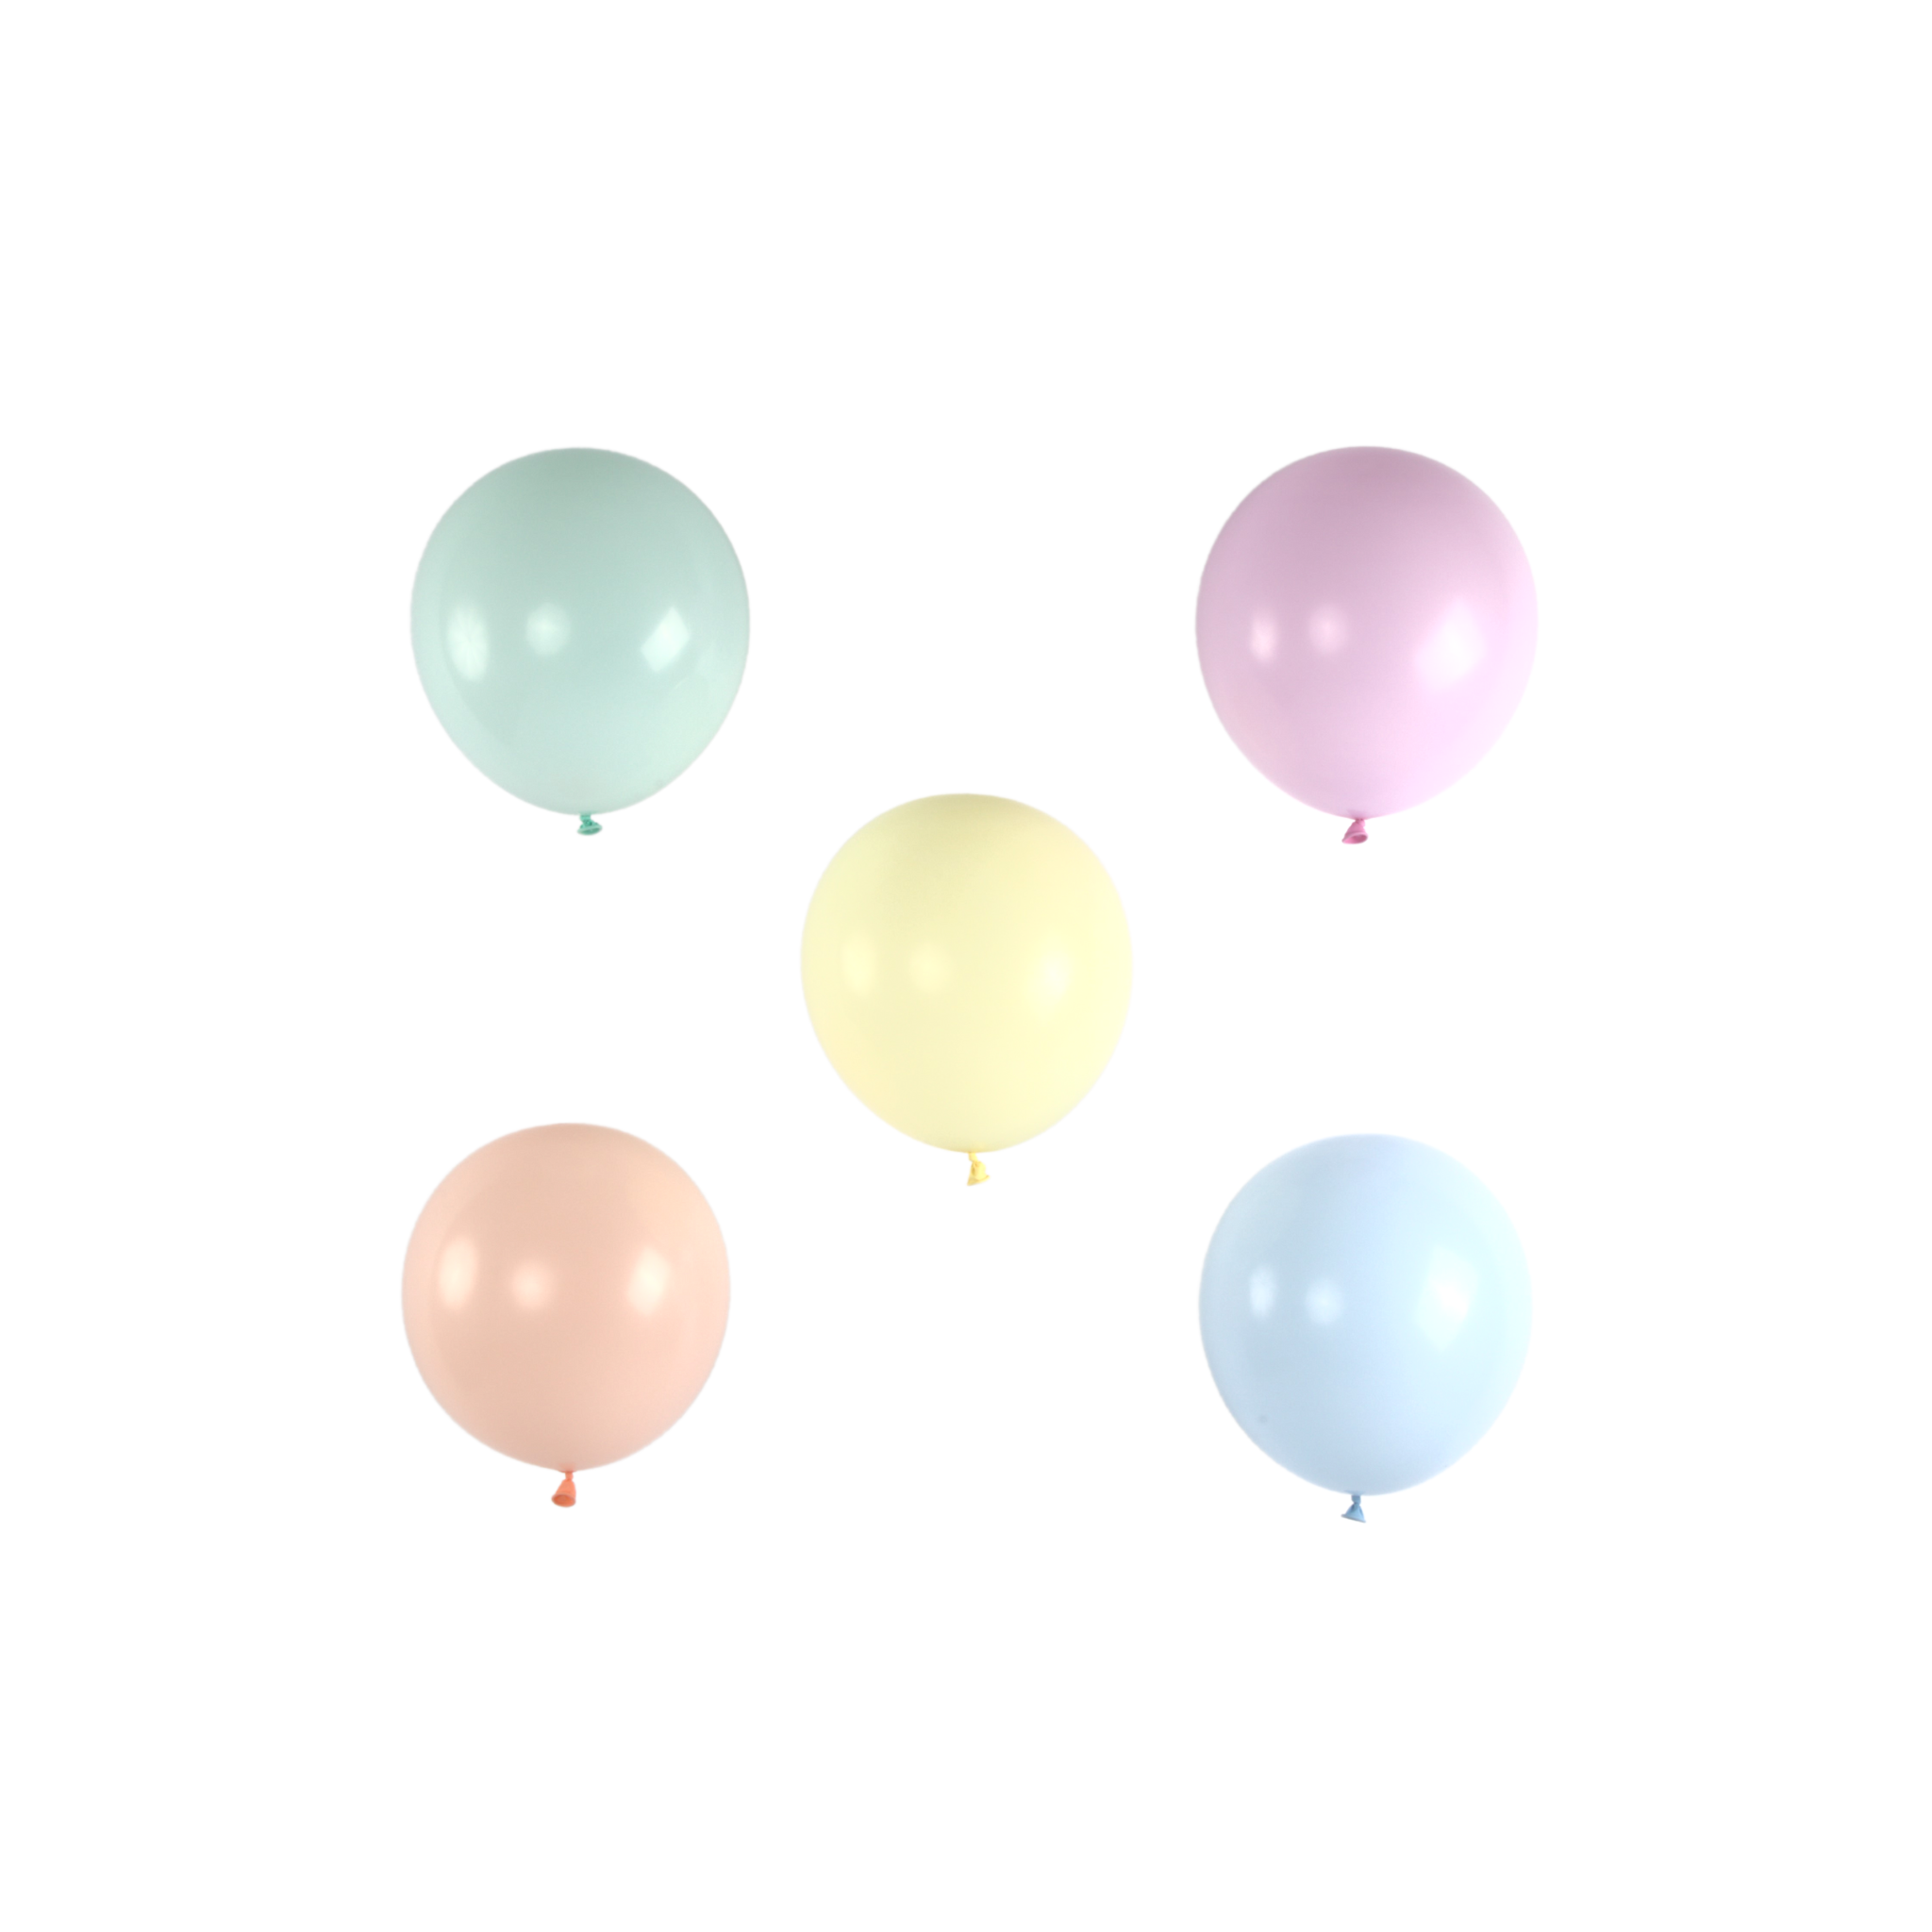 Matte Pastel Balloon Garland DIY, How To